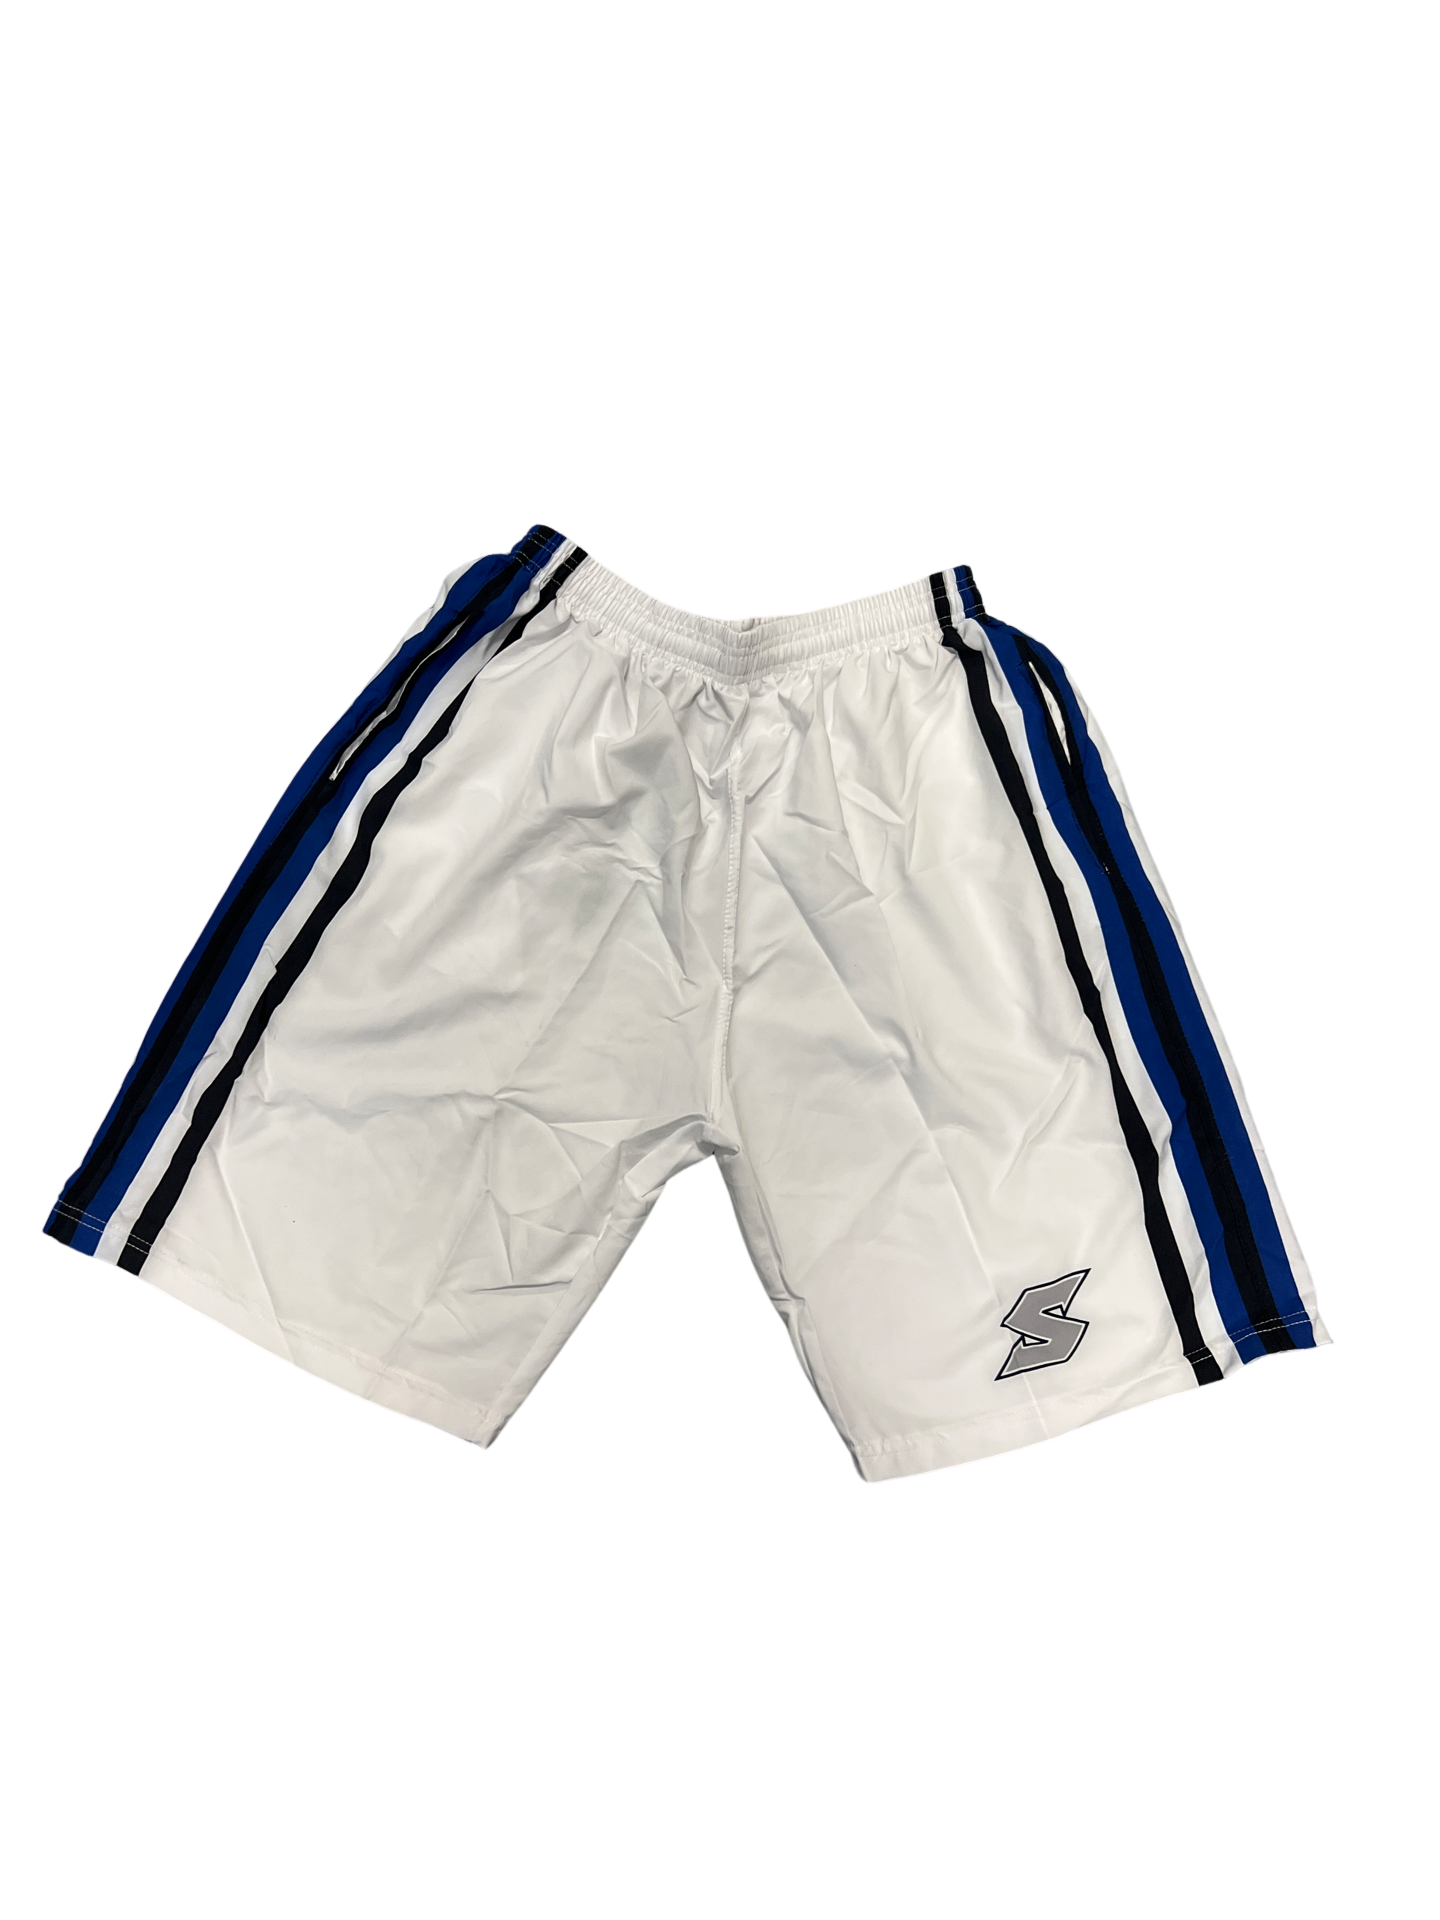 Suncoast White Shorts Blk/Royal Side Stripe – Suncoast West Senior ...